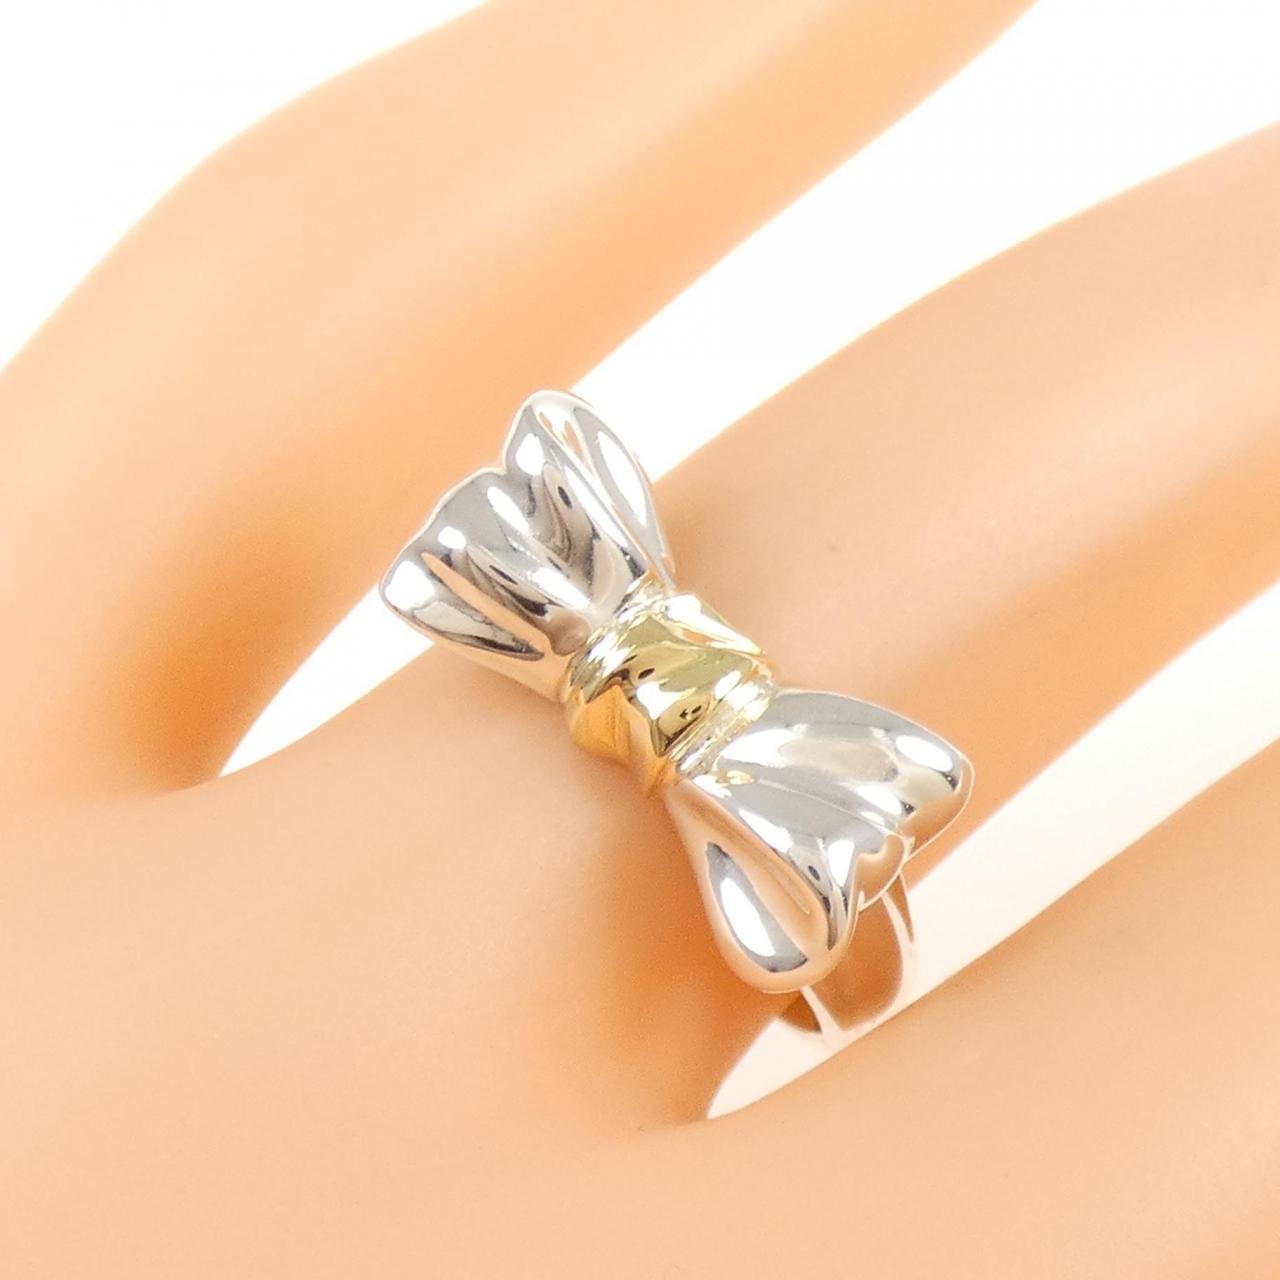 Tiffany & Co RARE Silver 18K Heart Bow Ribbon Ring Size 5! | eBay